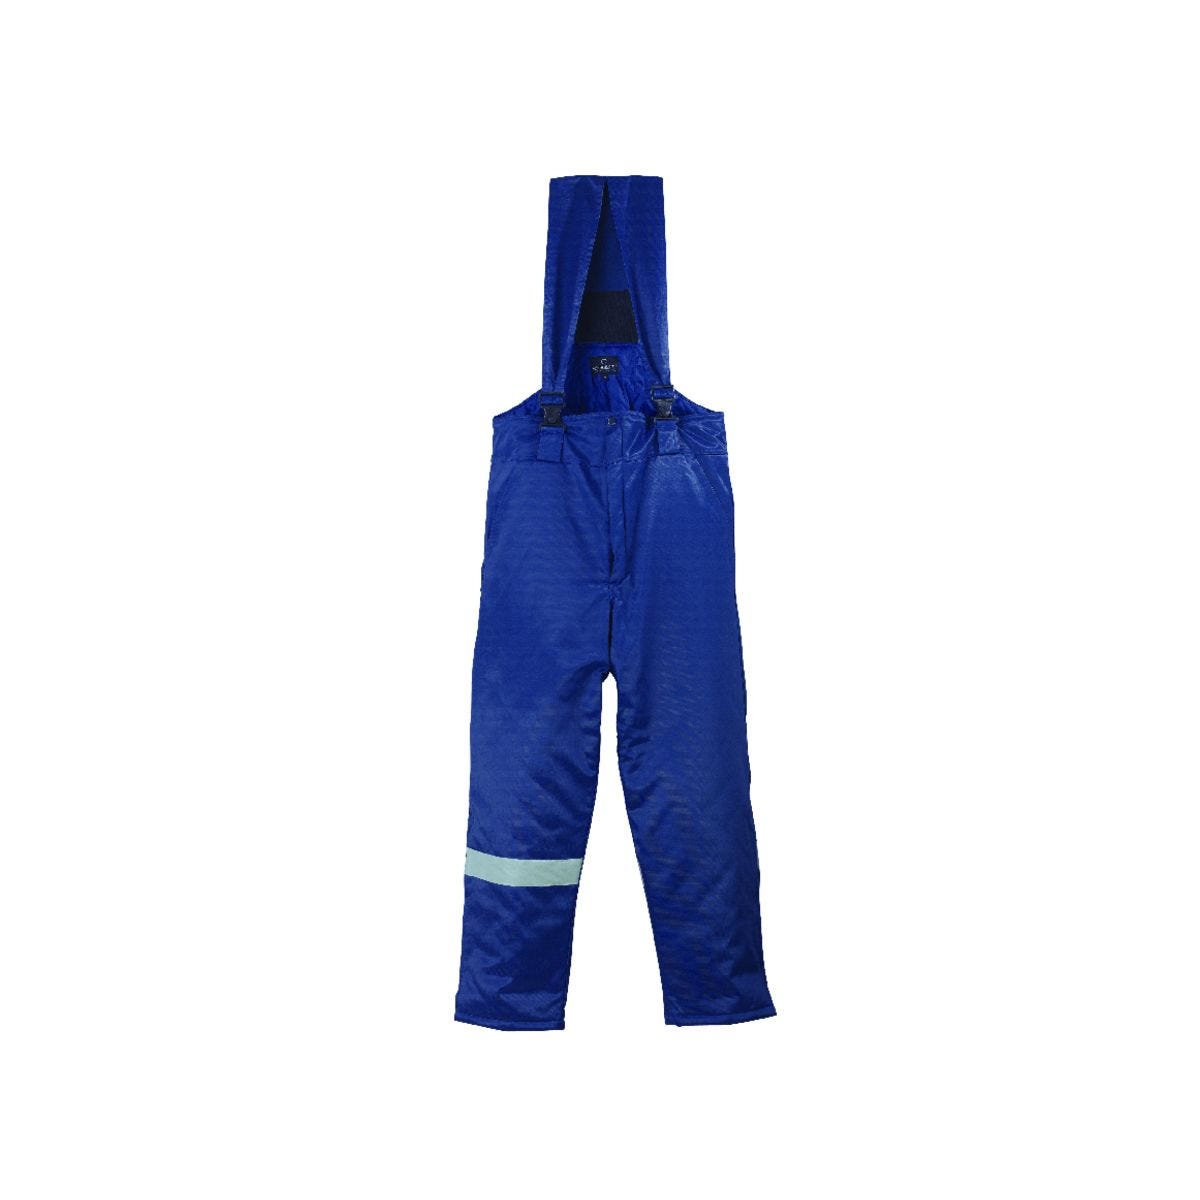 Pantalon BEAVER bleu - COVERGUARD - Taille XL 0